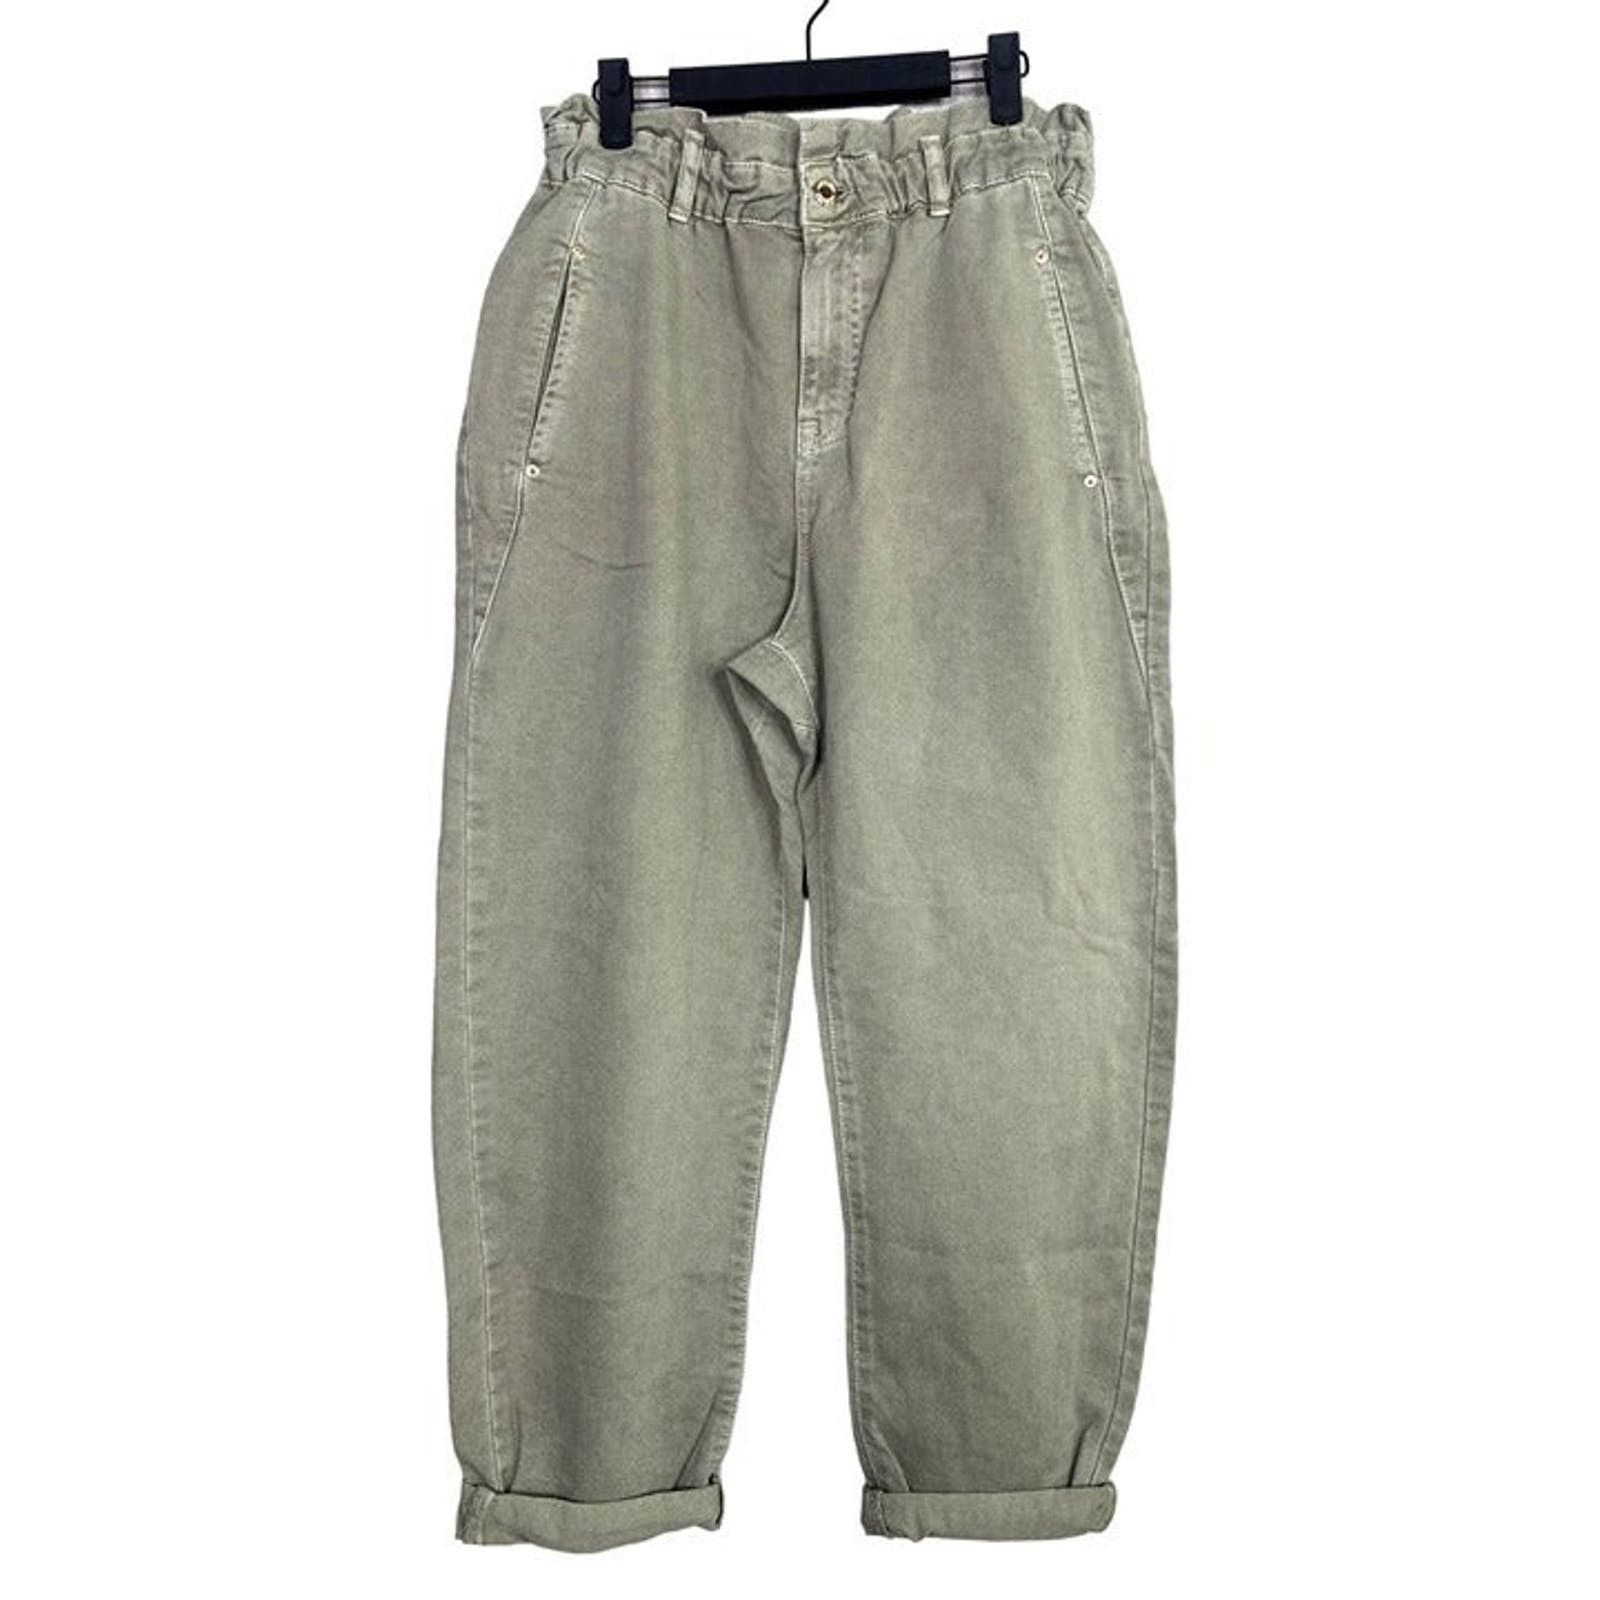 Zara Zara Paper Bag Relaxed Baggy Jeans Pants 29 Khaki Green Size 29" - 3 Thumbnail